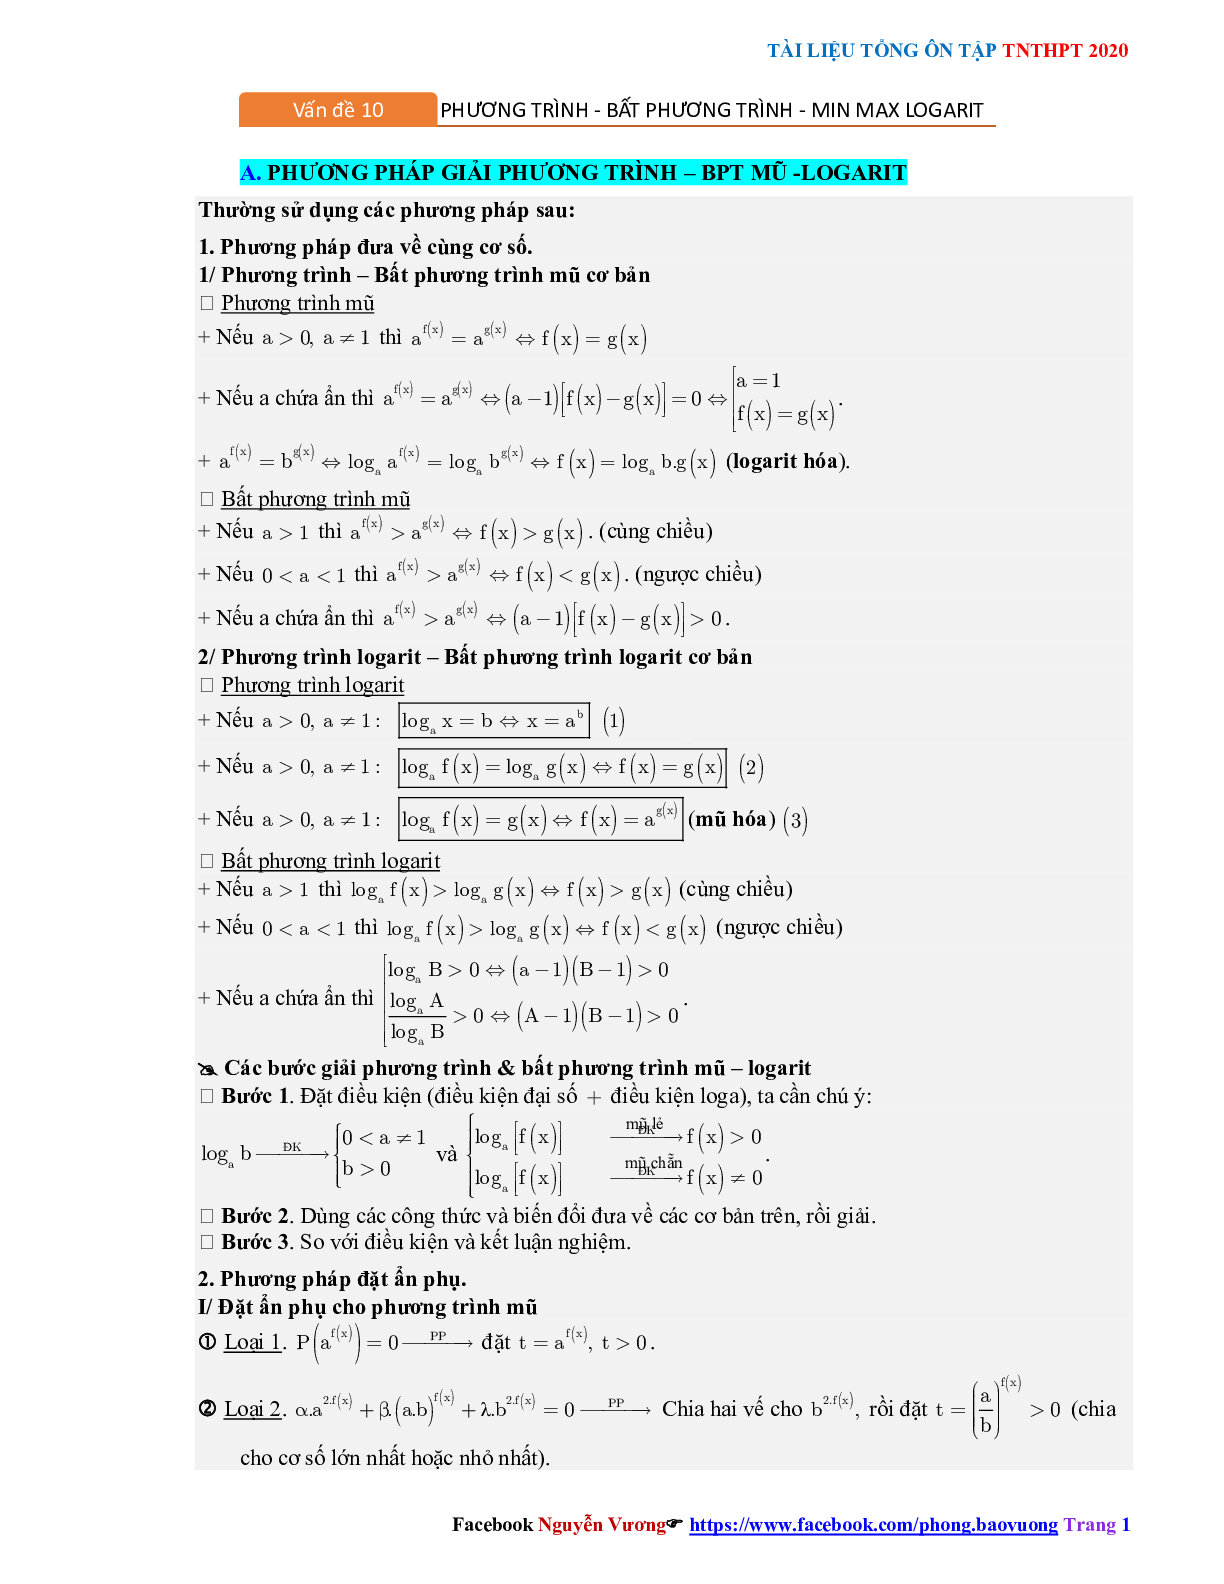 Phương pháp giải về Phương trình, bất phương trình mũ và logarit 2023 (lý thuyết và bài tập) (trang 1)